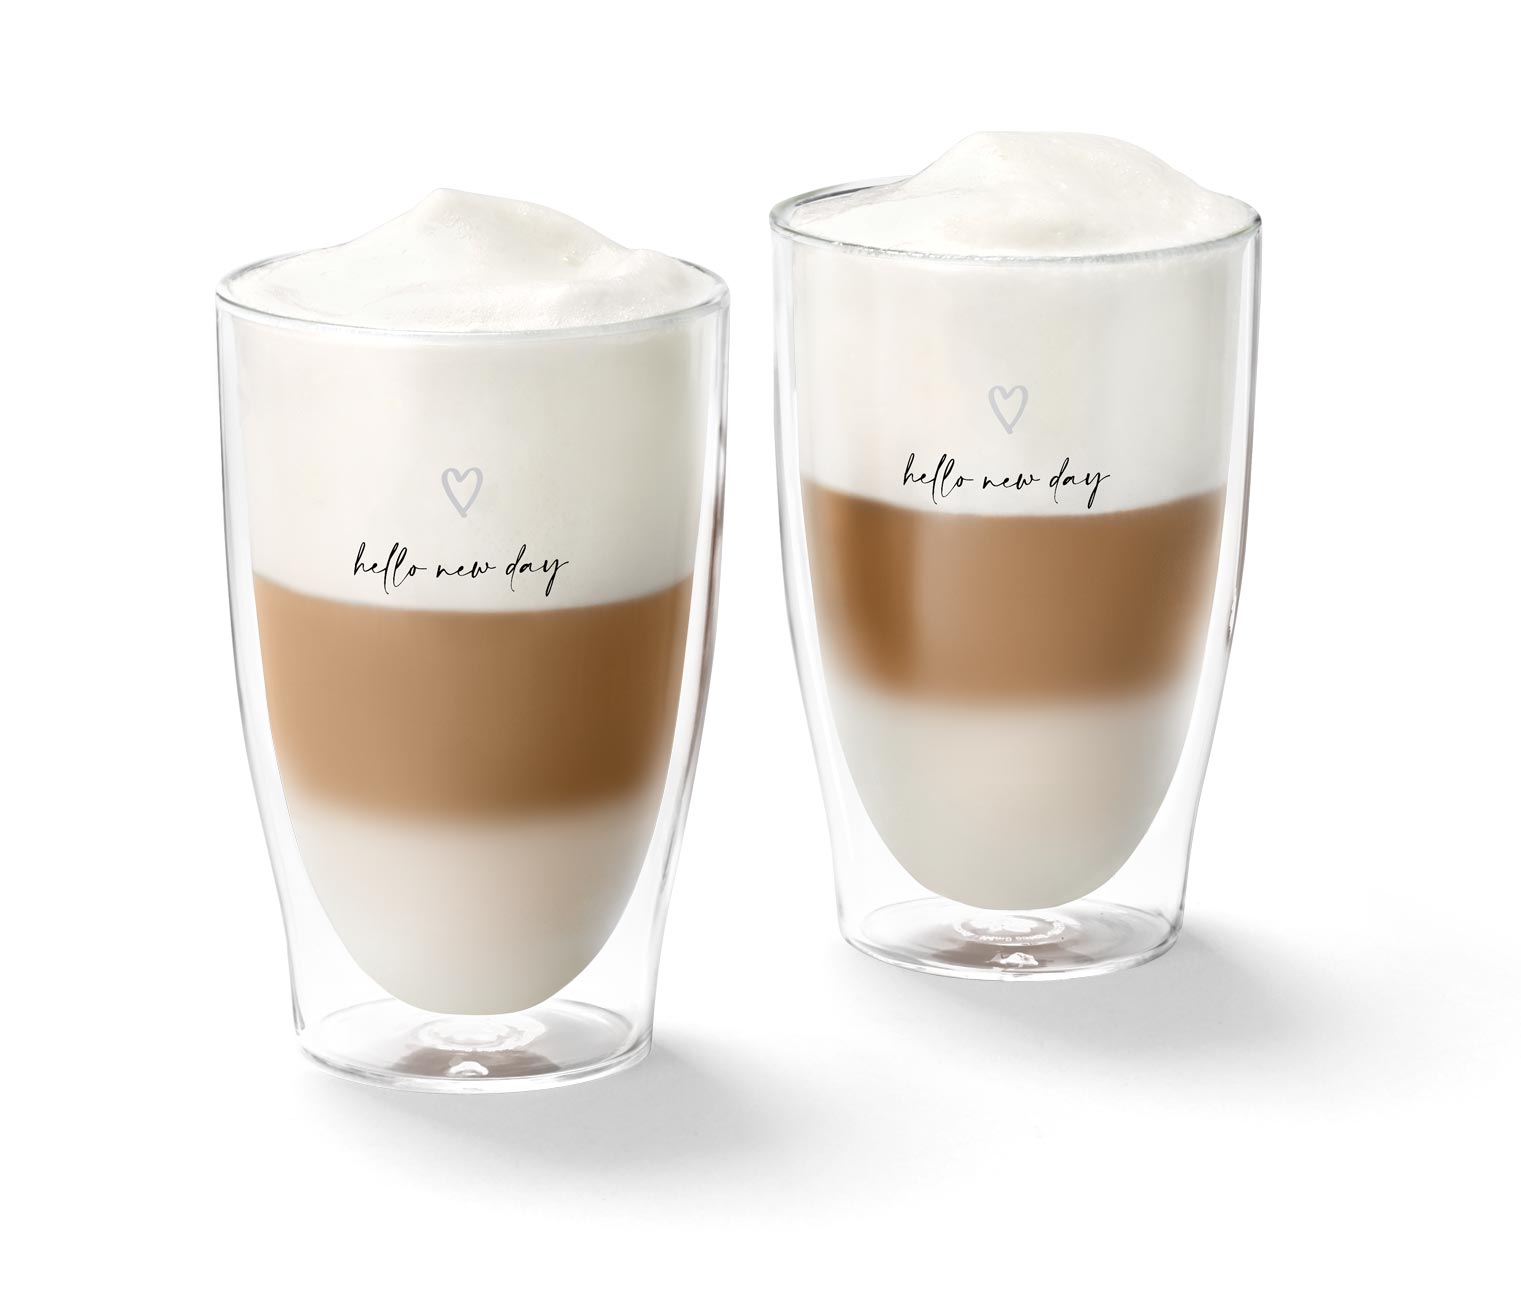 Latte macchiato poharak szettben, szívecske mintás 655995 a Tchibo-nál.